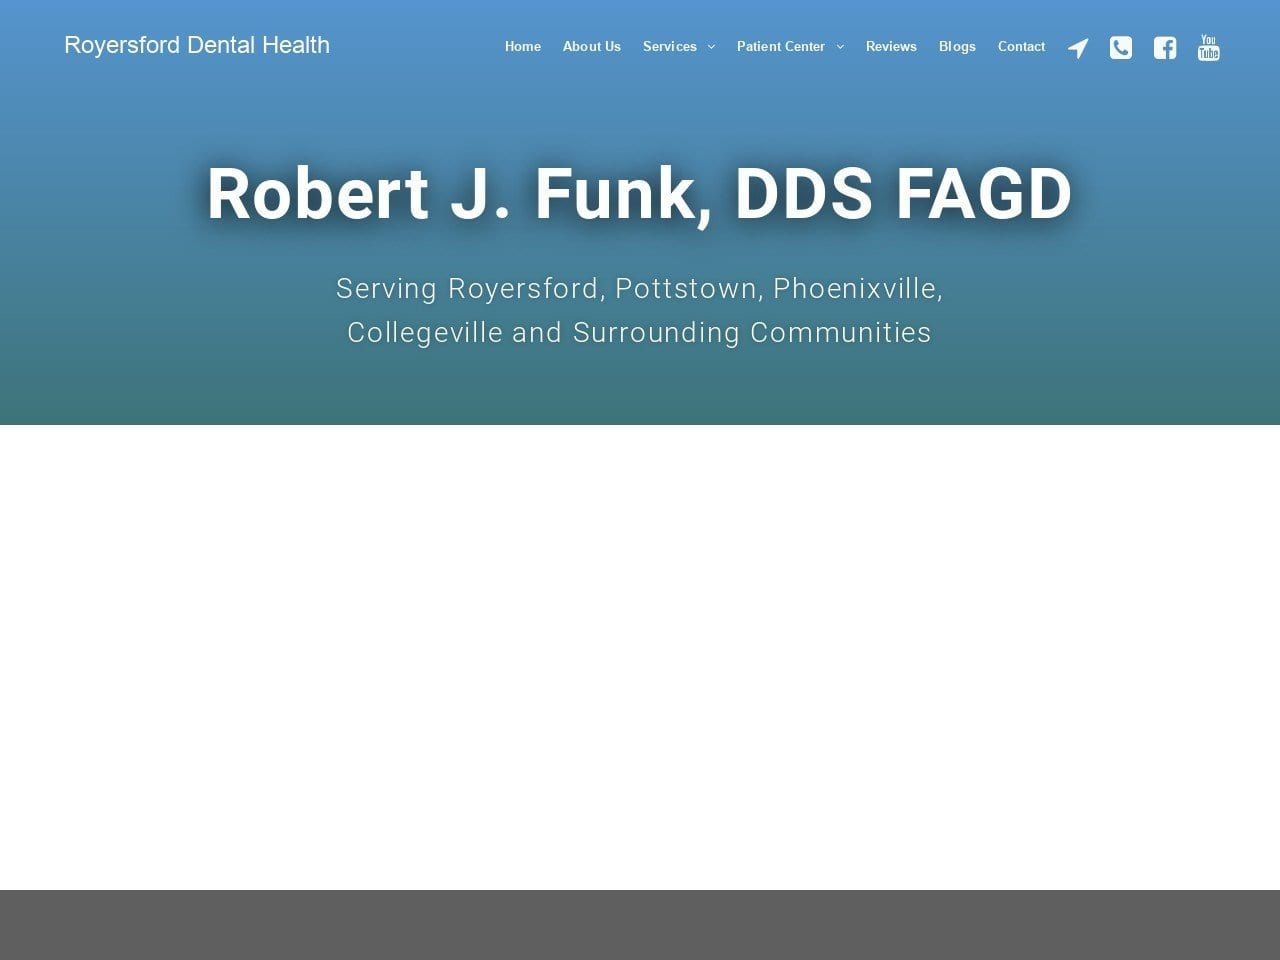 Robert J. Funk DDS Website Screenshot from drrobertjfunk.com